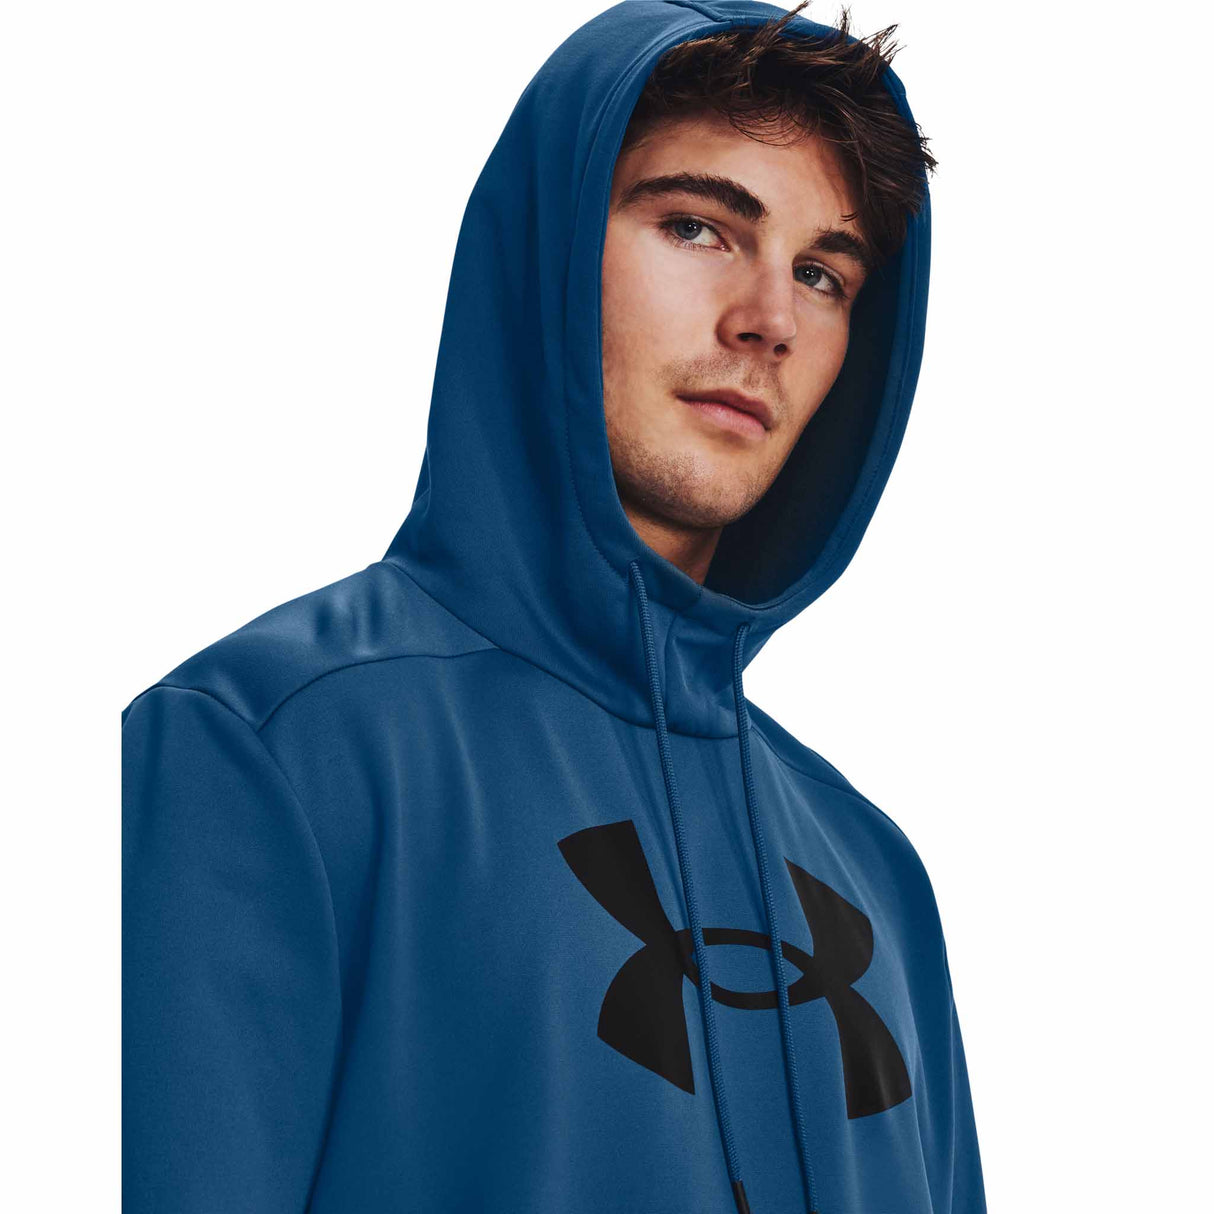 UA Armour Fleece Hoodie sweatshirt à capuchon pour homme - Varsity Blue